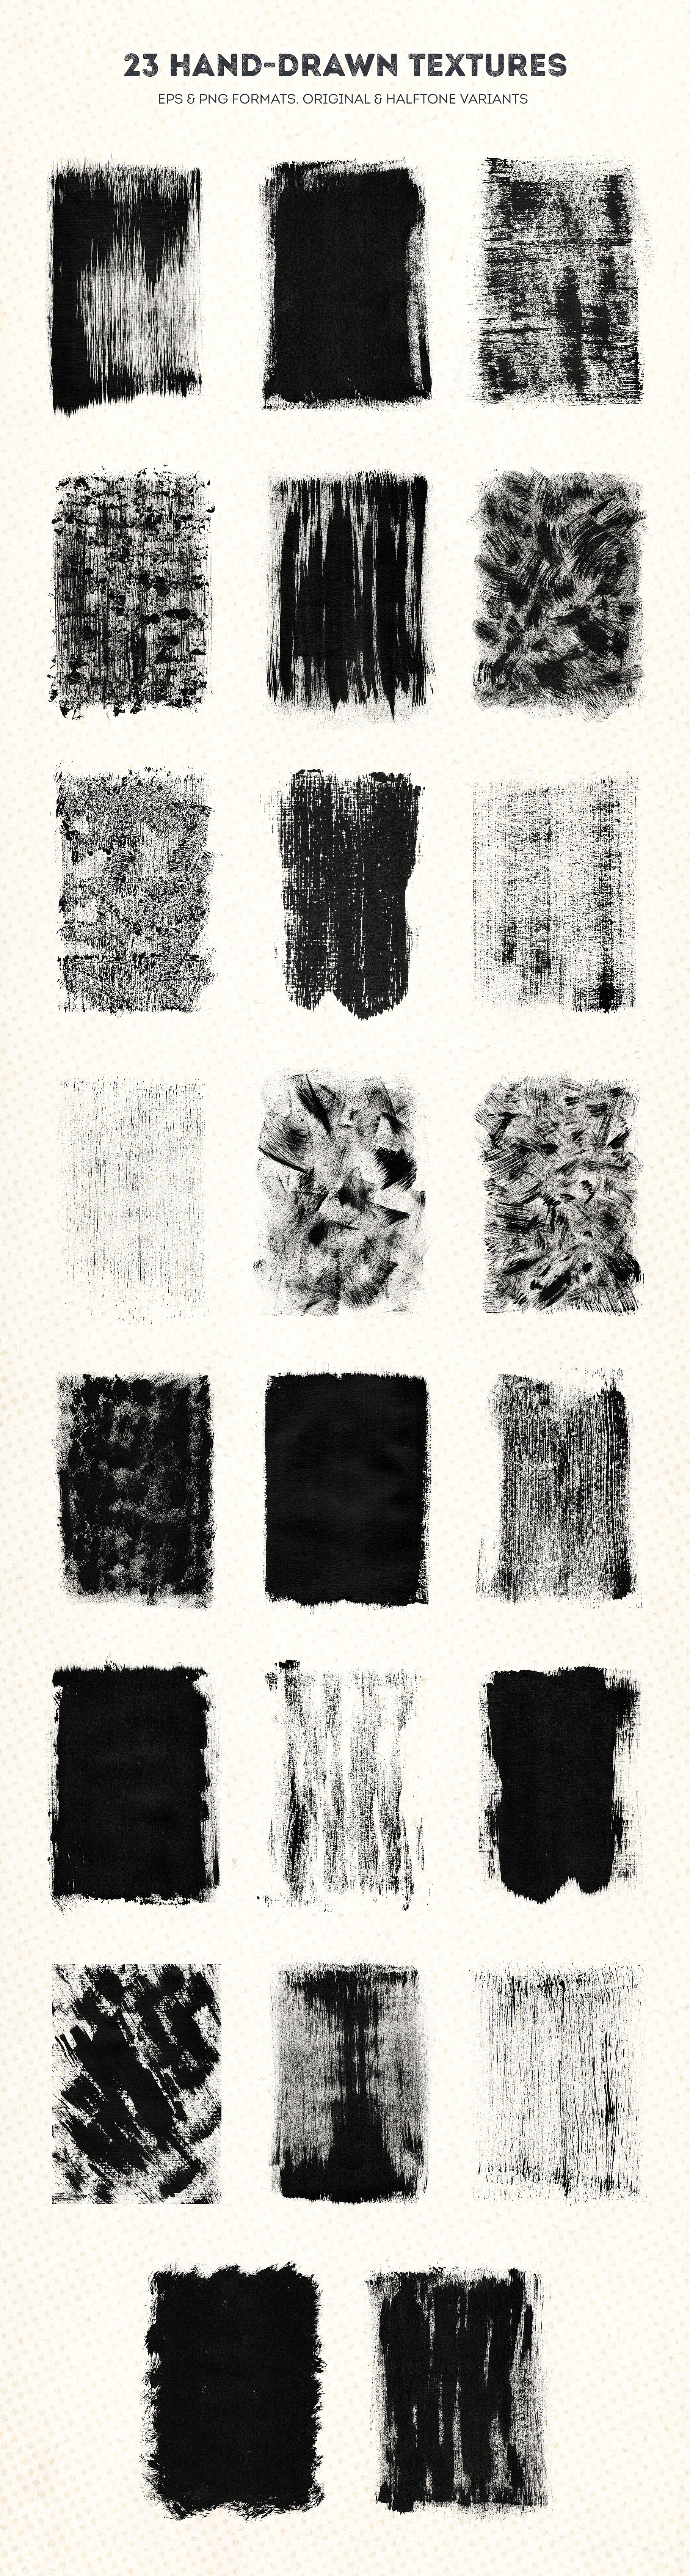 手绘黑色粗糙油漆油墨印刷纹理集合 Blackview Grunge Textures Collection插图2